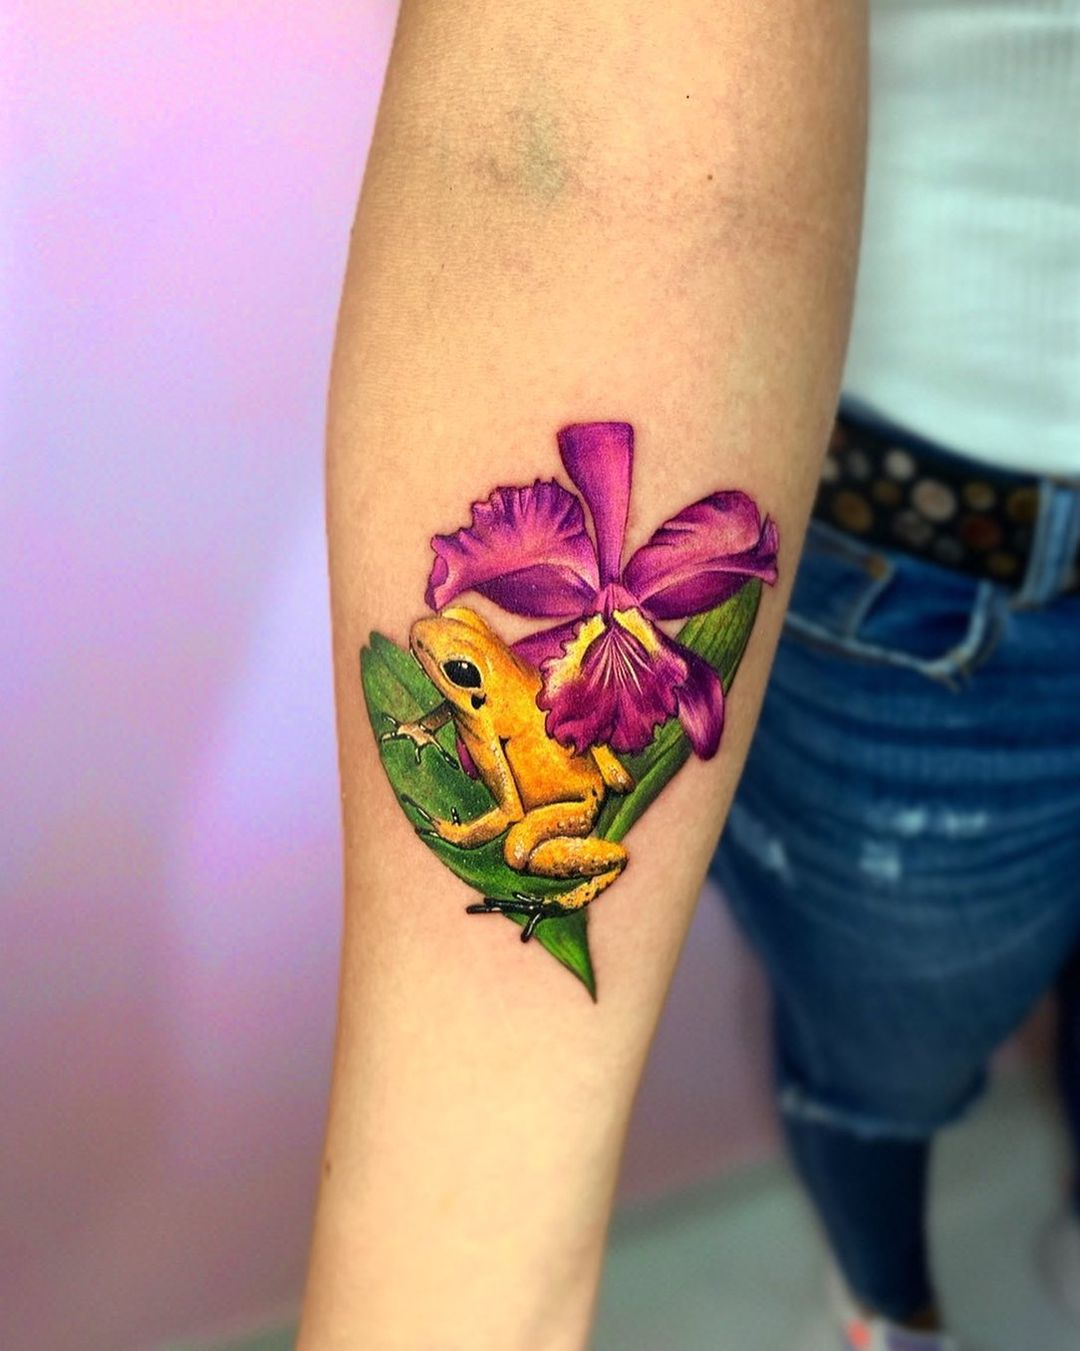 Tatuaje brillante de orquídea con una rana